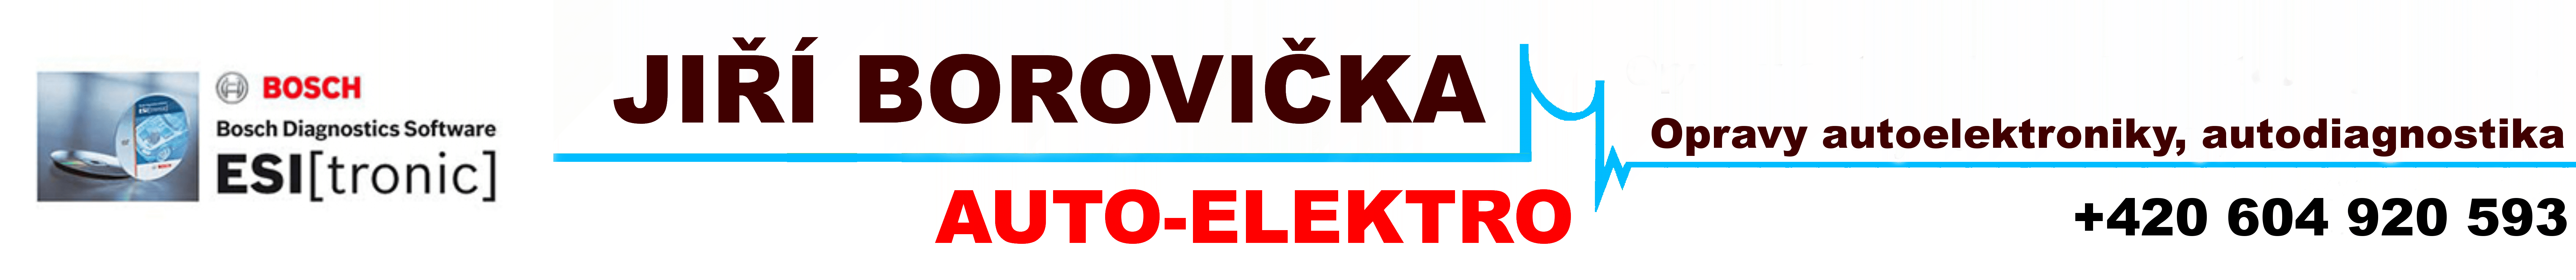 Jiří Borovička Auto - Elektro Logo